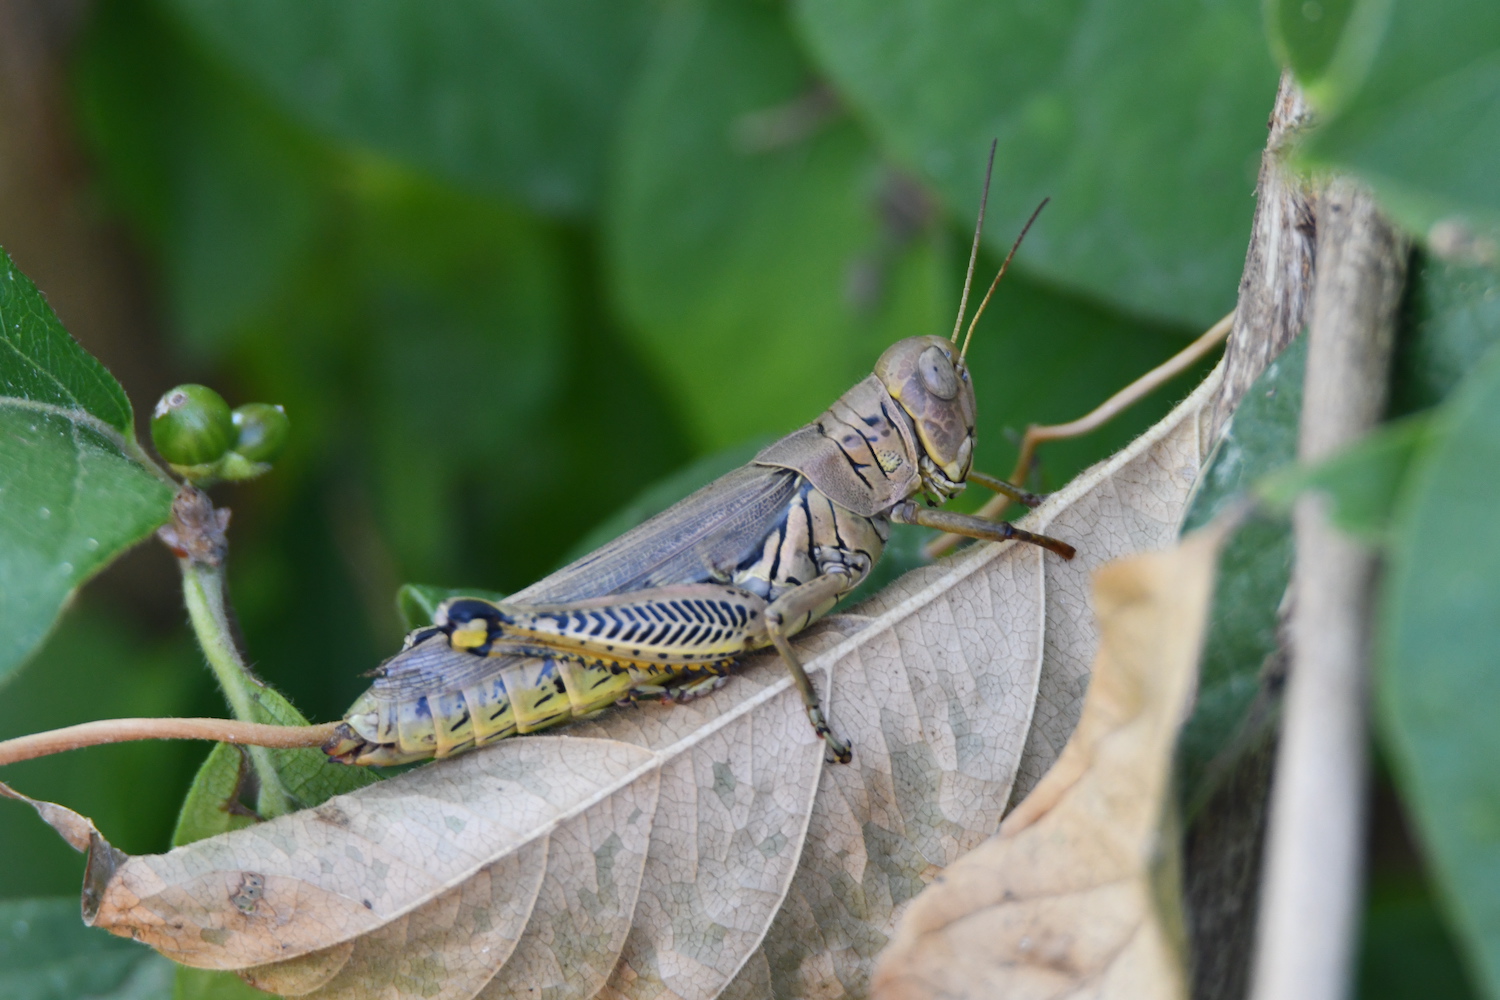 A grasshopper sitting on a brown leaf.